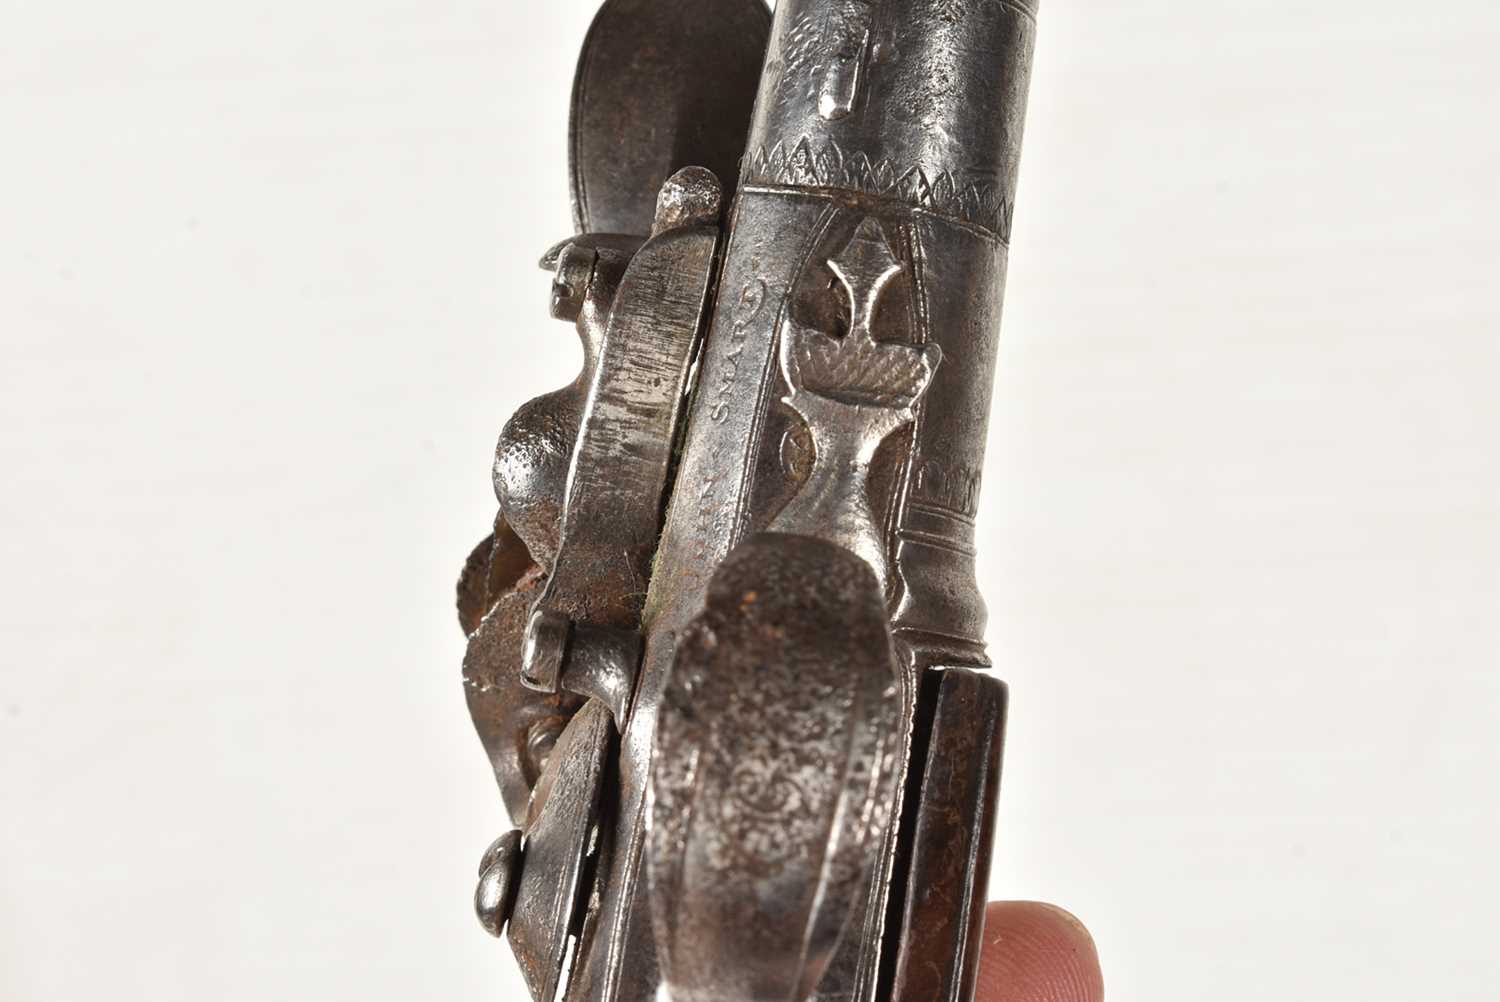 A 17th Century Flintlock pistol by John Smart, - Image 10 of 10